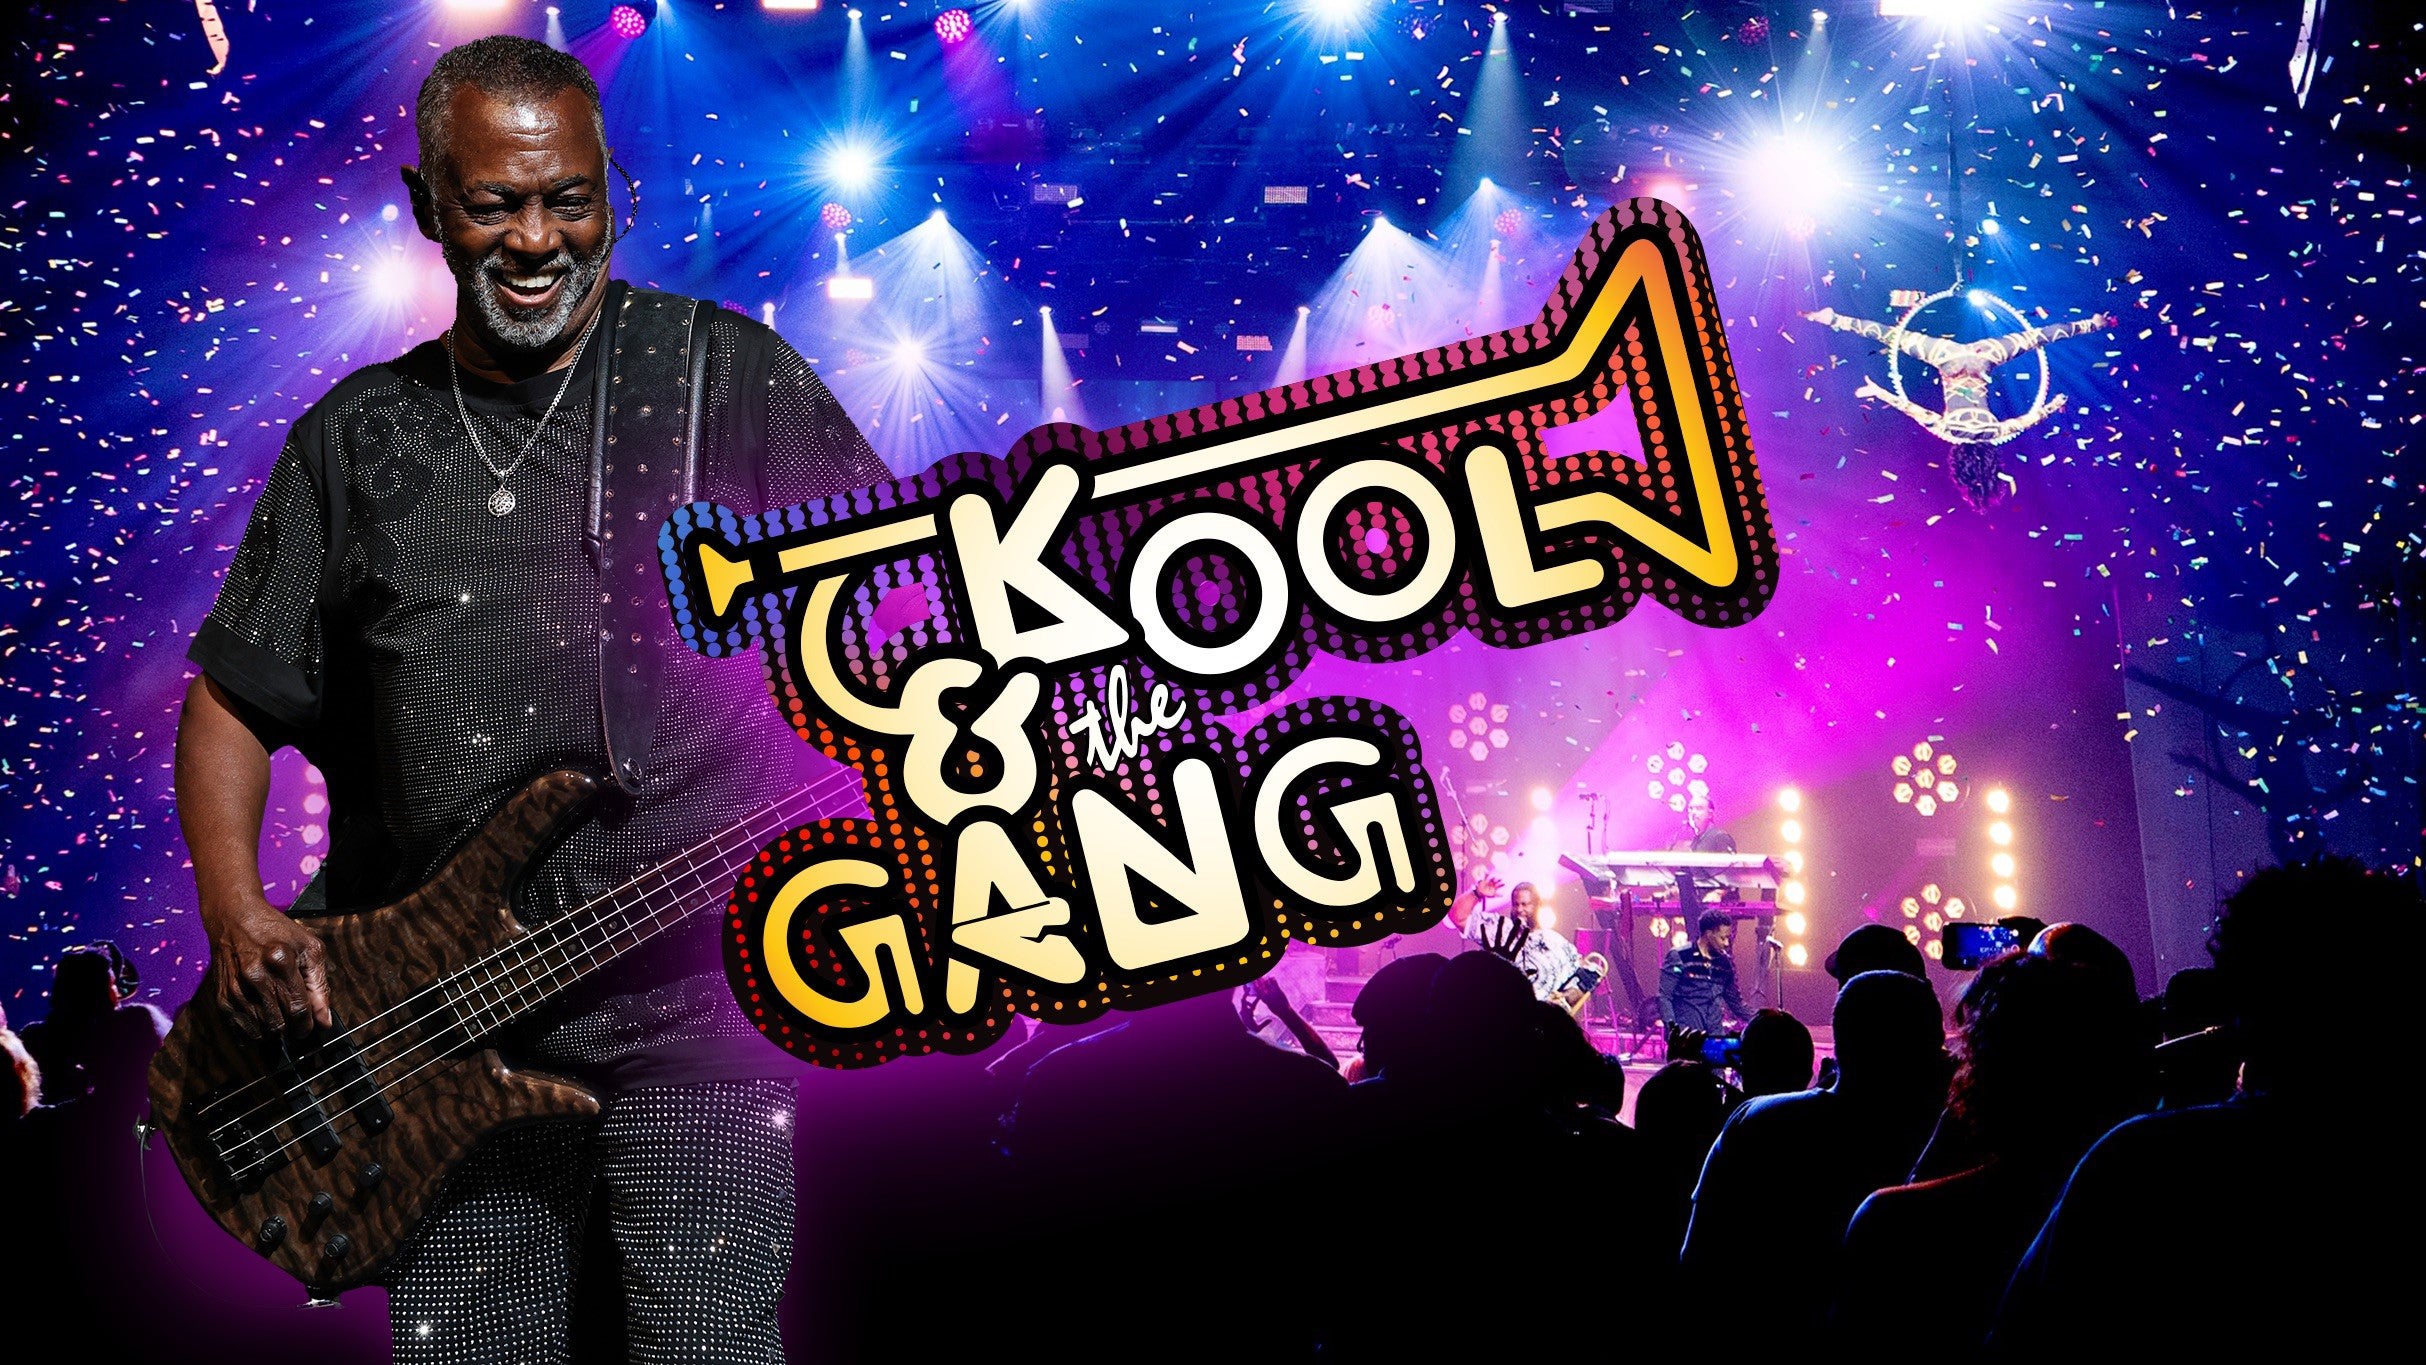 Kool & the Gang at Westgate Las Vegas Resort & Casino – Las Vegas, NV